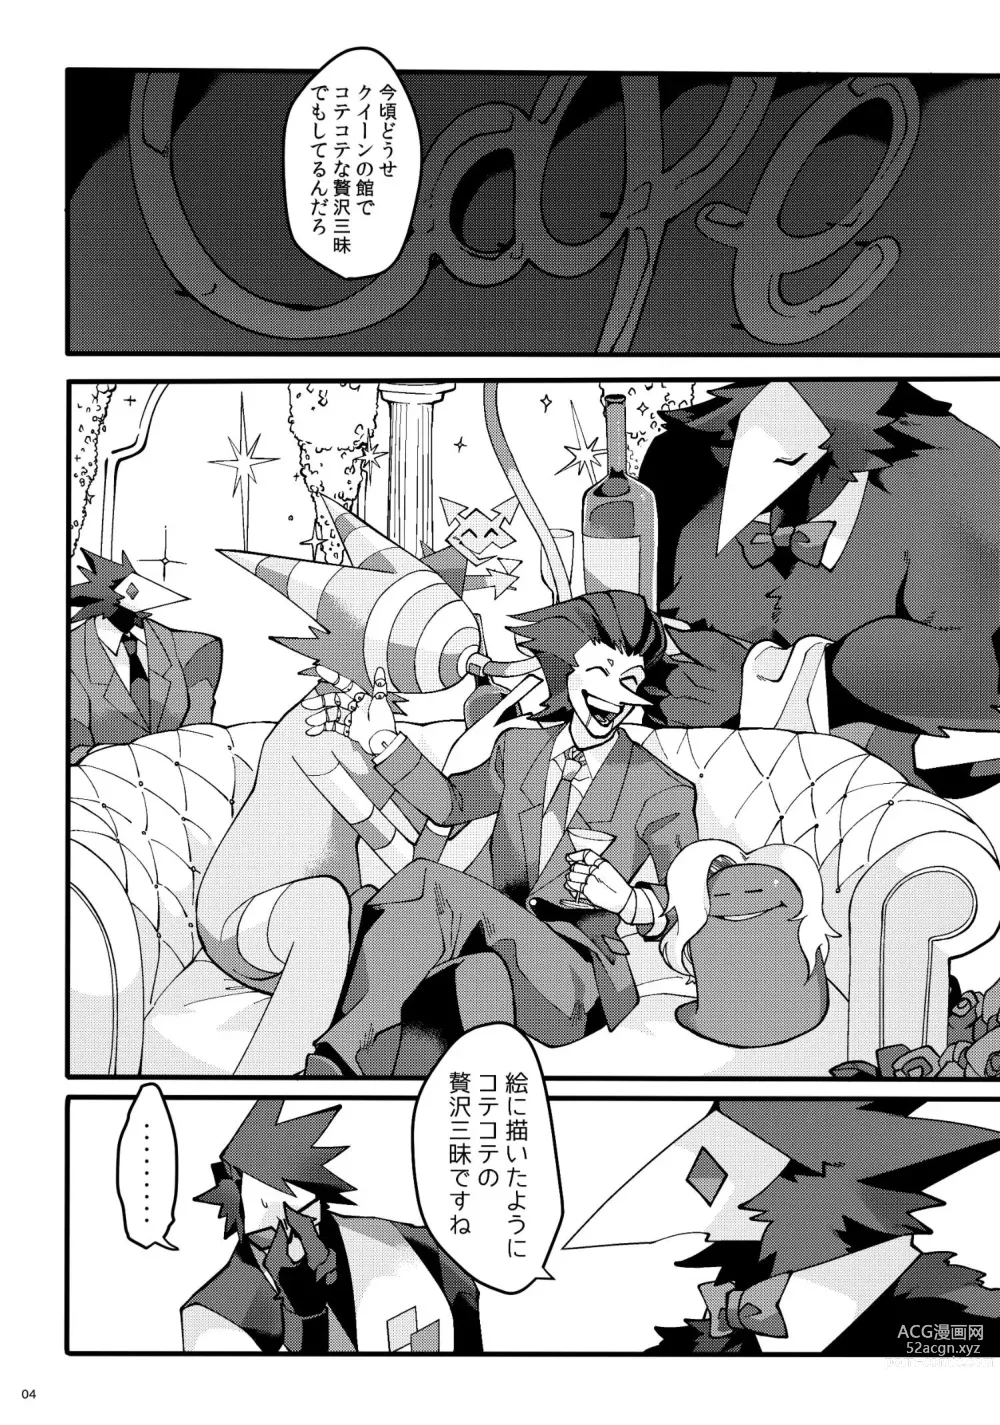 Page 5 of doujinshi Uchoutengai